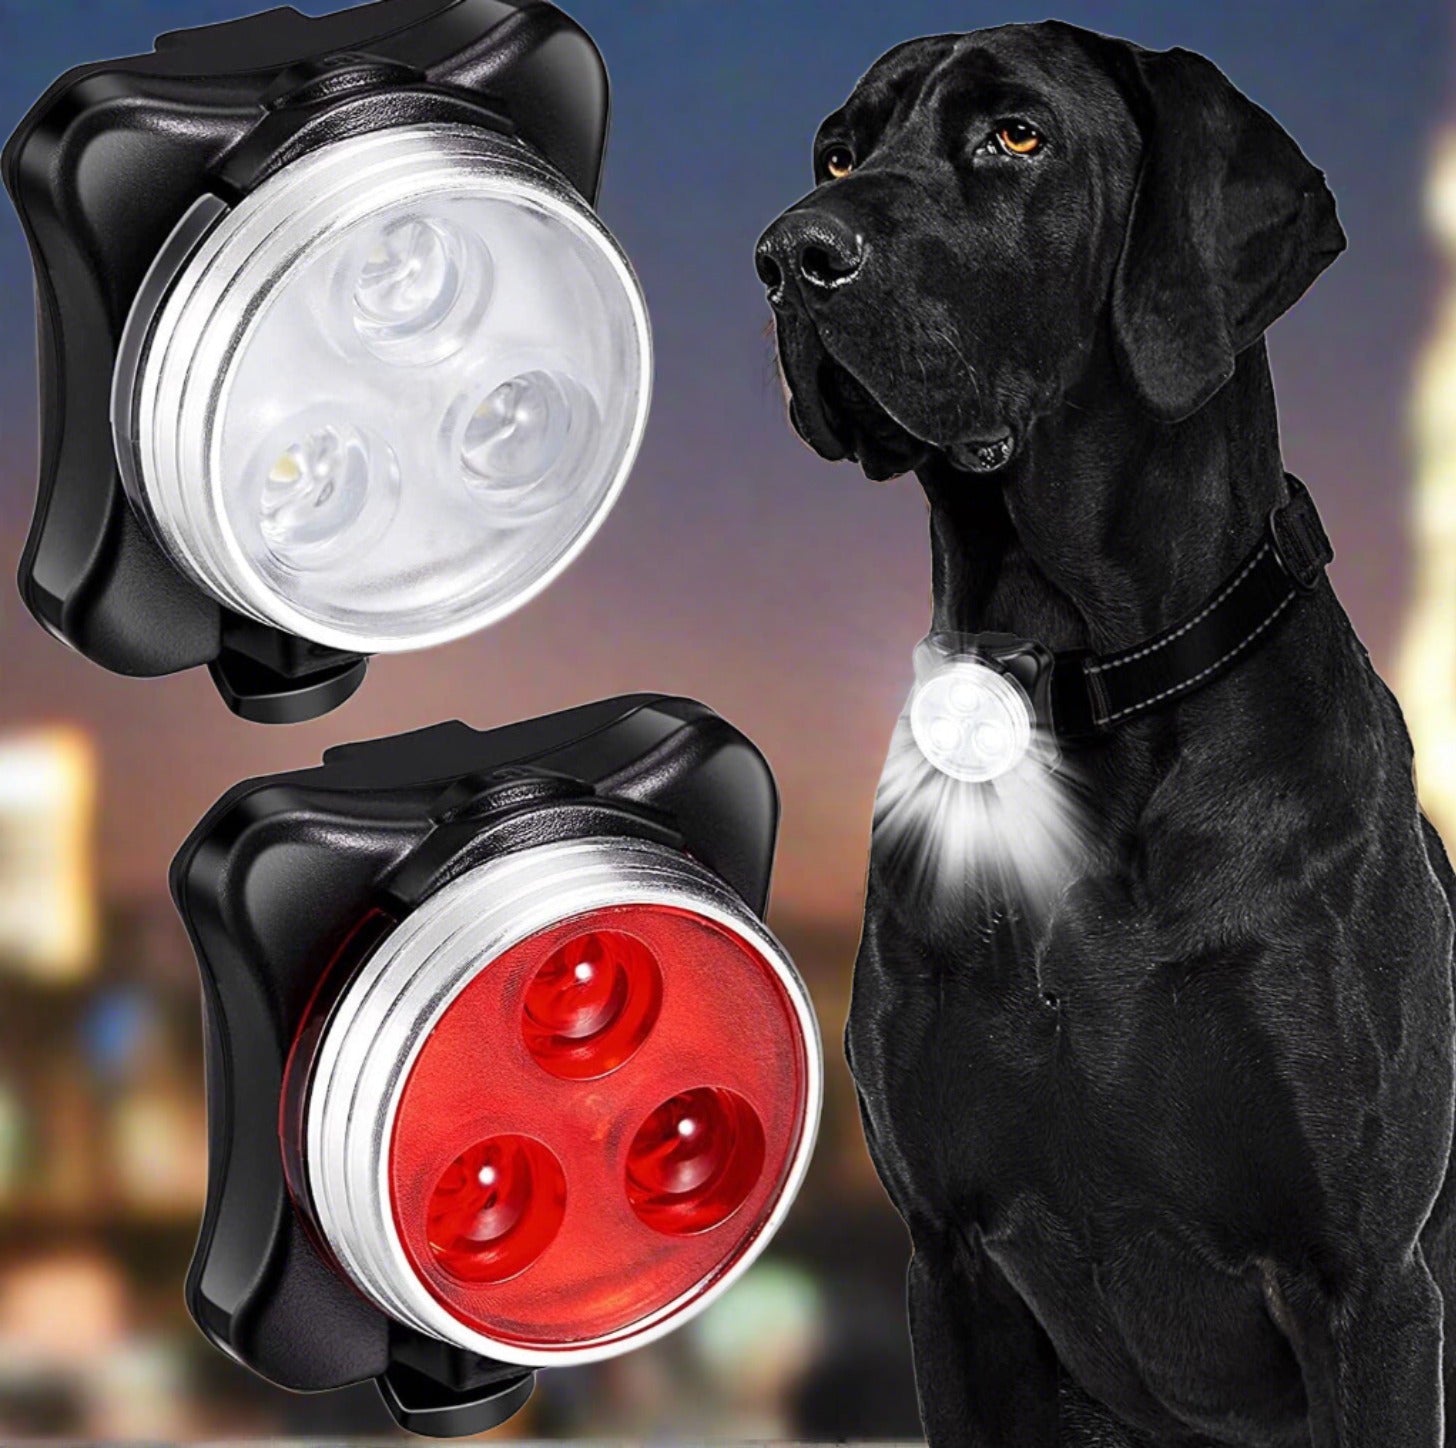 Dog Collar LED Light-FurrGo